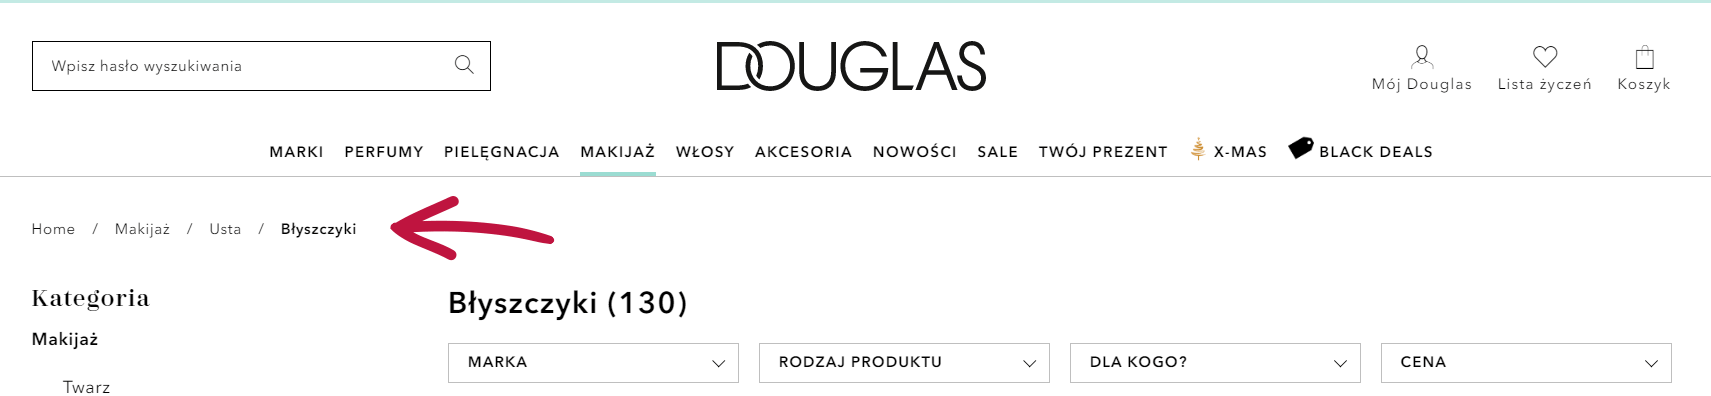 Przykładowe menu okruszkowe wykorzystane na https://www.douglas.pl/